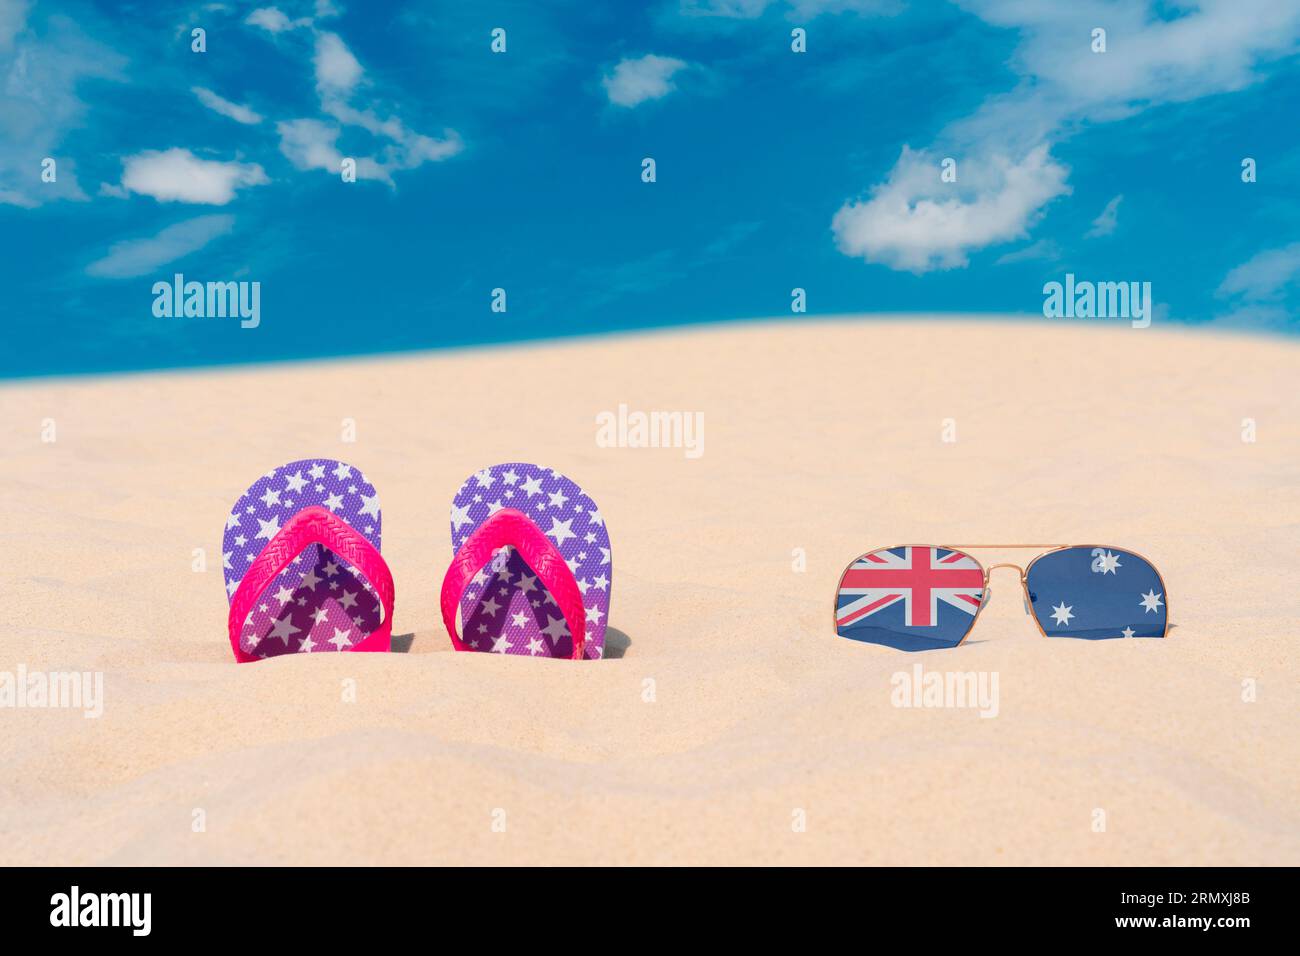 Gli occhiali da sole con occhiali sotto forma di bandiera dell'Australia e infradito giacciono sulla sabbia contro il cielo blu. Concetto di vacanze estive e viaggi in Australia Foto Stock